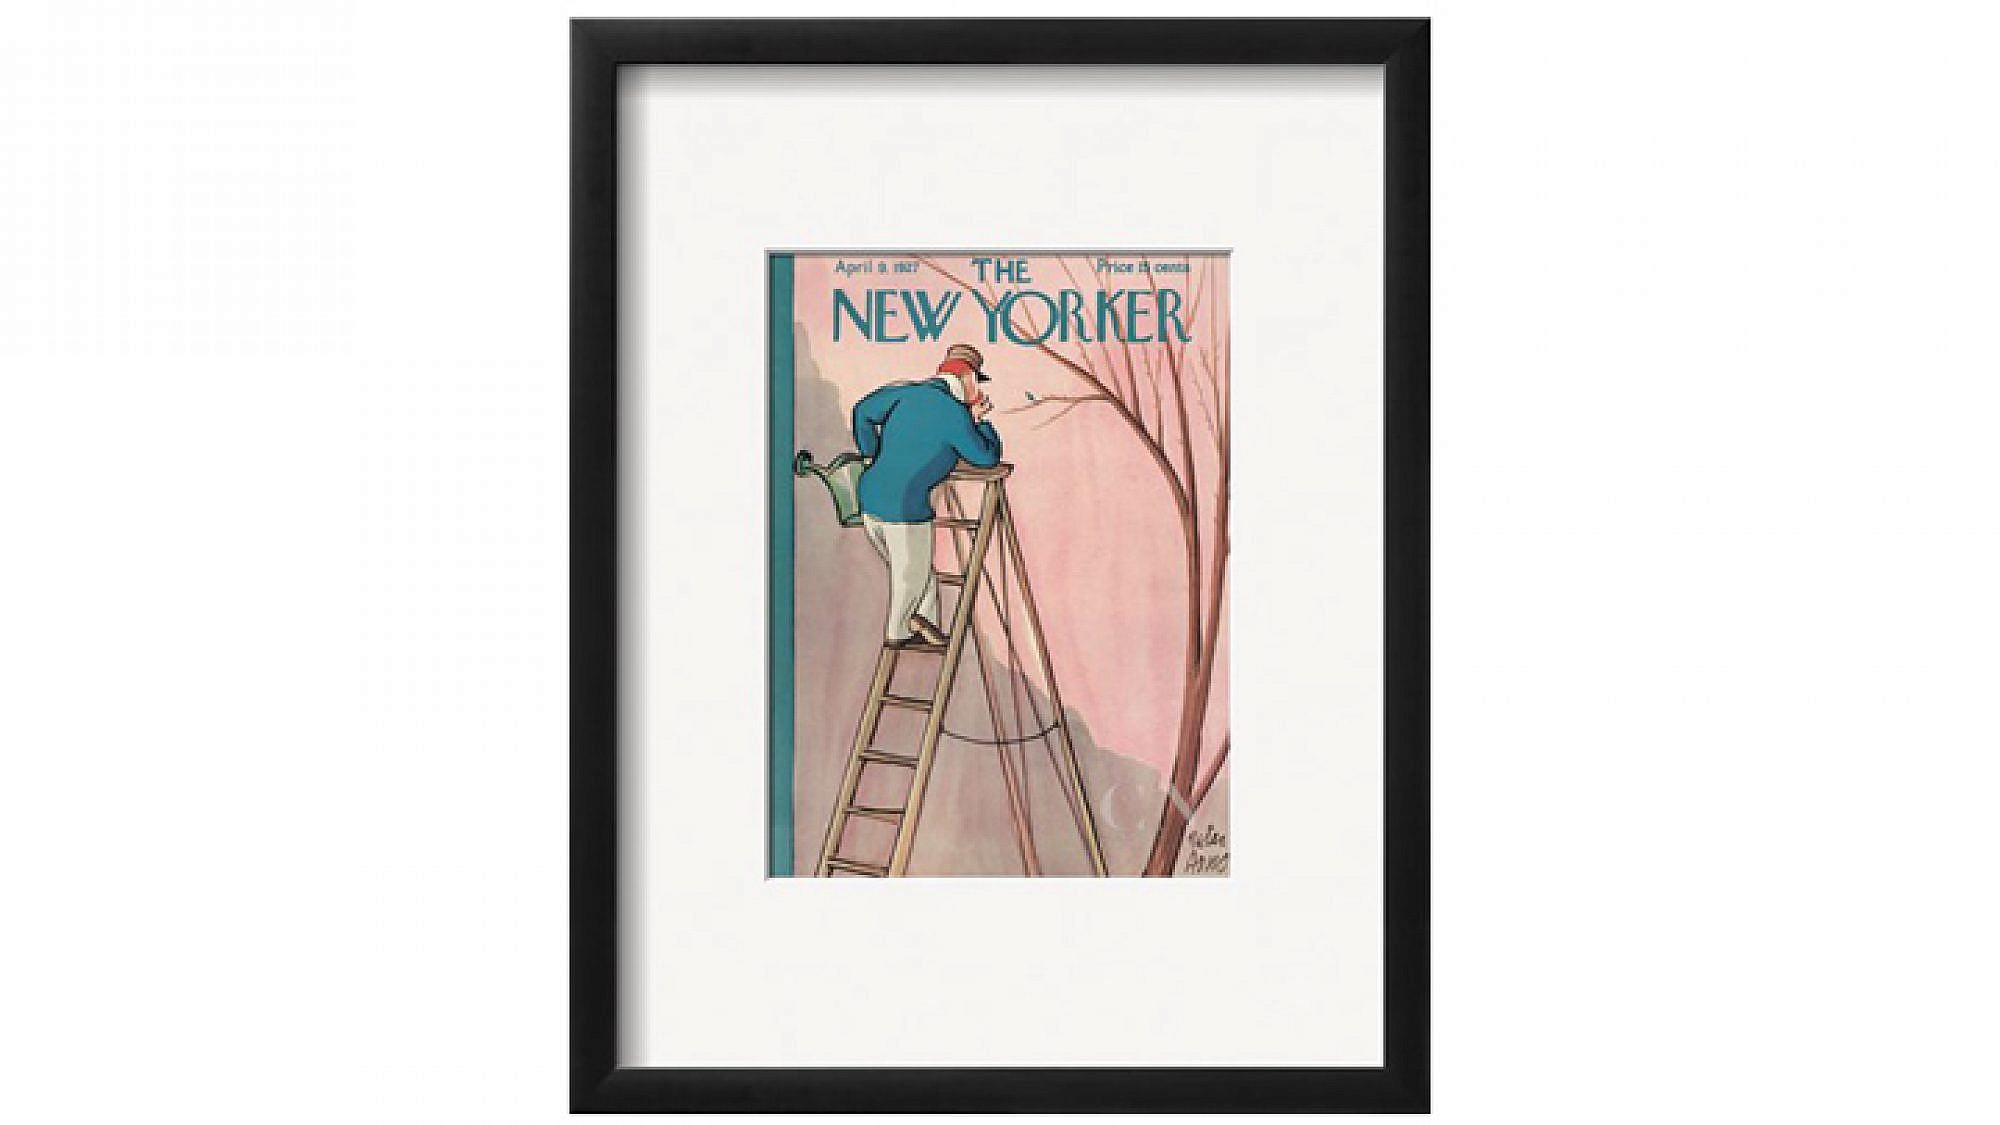 שער של "הניו יורקר" | צילום: מתוך האתר condenaststore.com